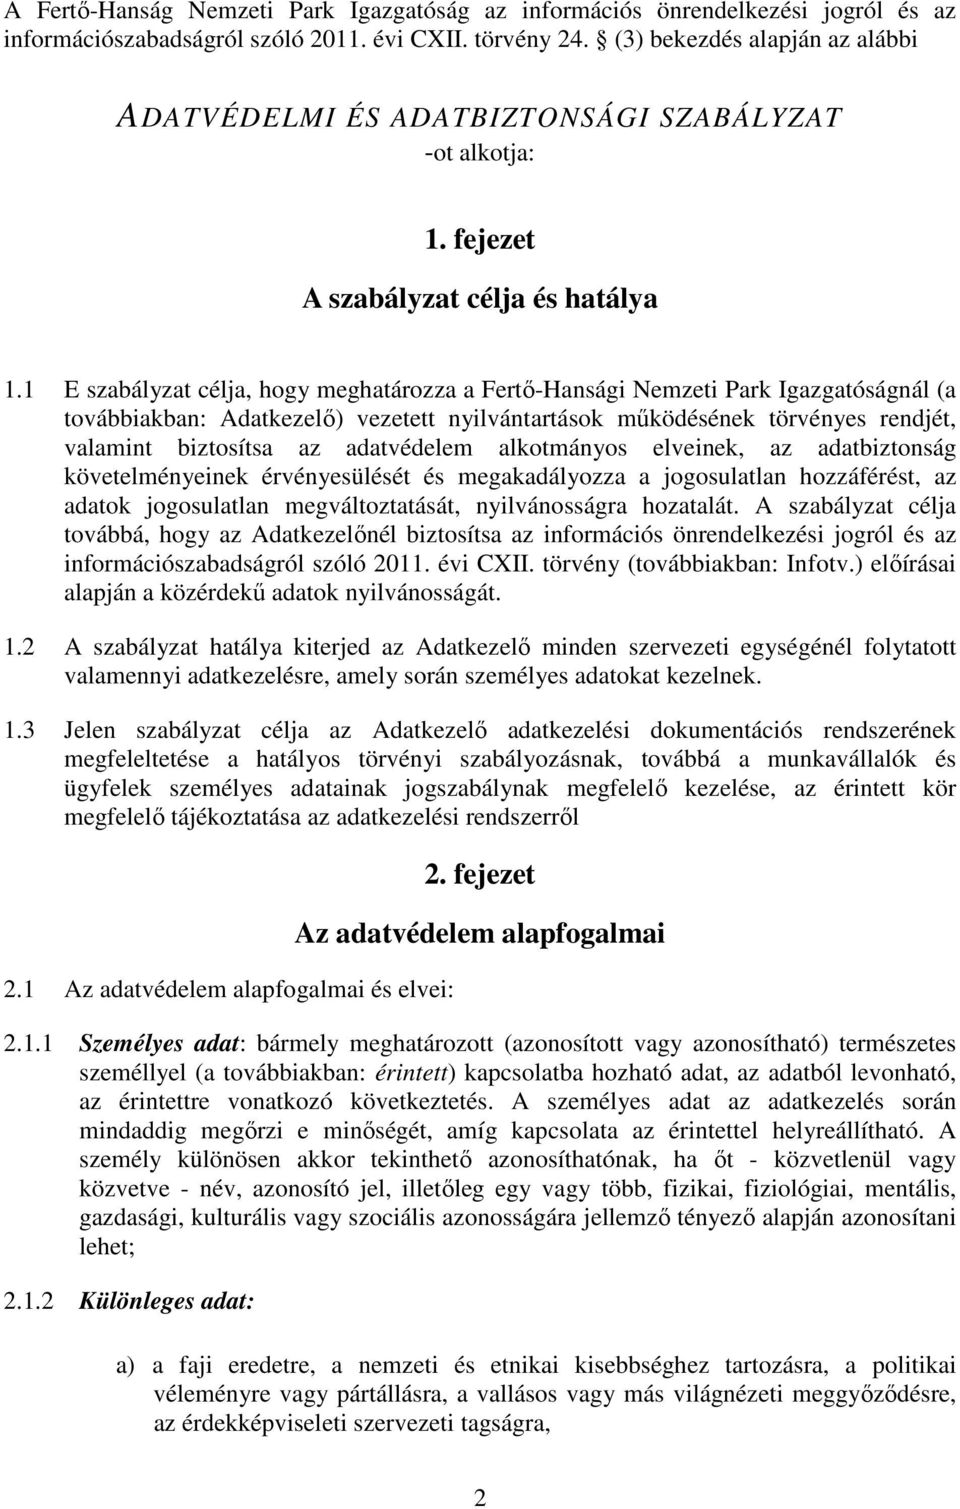 1 E szabályzat célja, hogy meghatározza a Fertő-Hansági Nemzeti Park Igazgatóságnál (a továbbiakban: Adatkezelő) vezetett nyilvántartások működésének törvényes rendjét, valamint biztosítsa az